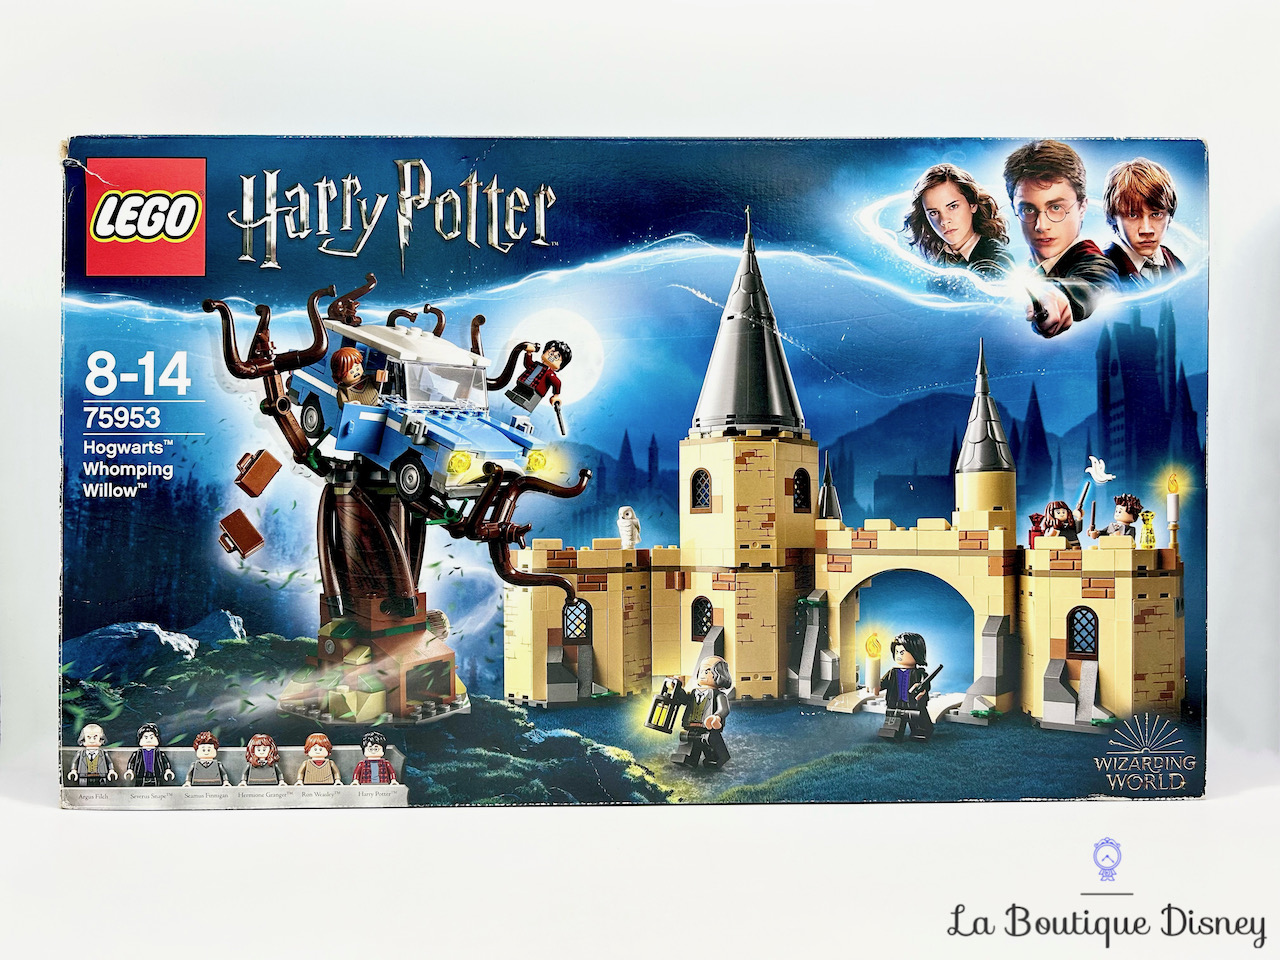 jouet-lego-75953-le-saule-cogneur-du-chateau-de-poudlard-harry-potter-1